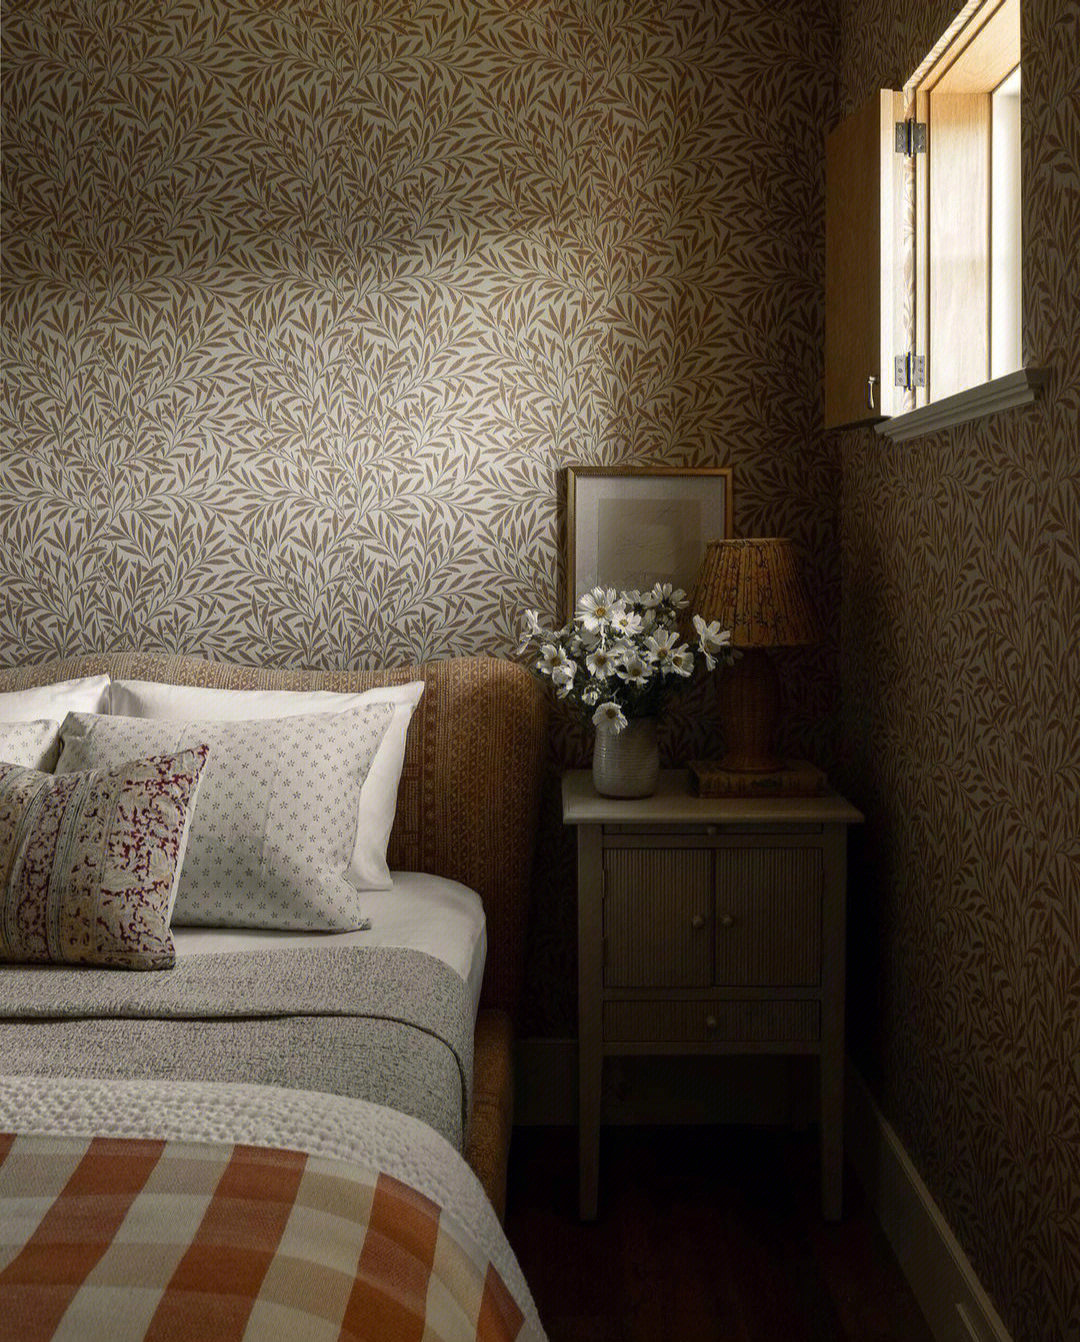 67当卧室墙面选择花色墙布时,其他软装应该怎么配?